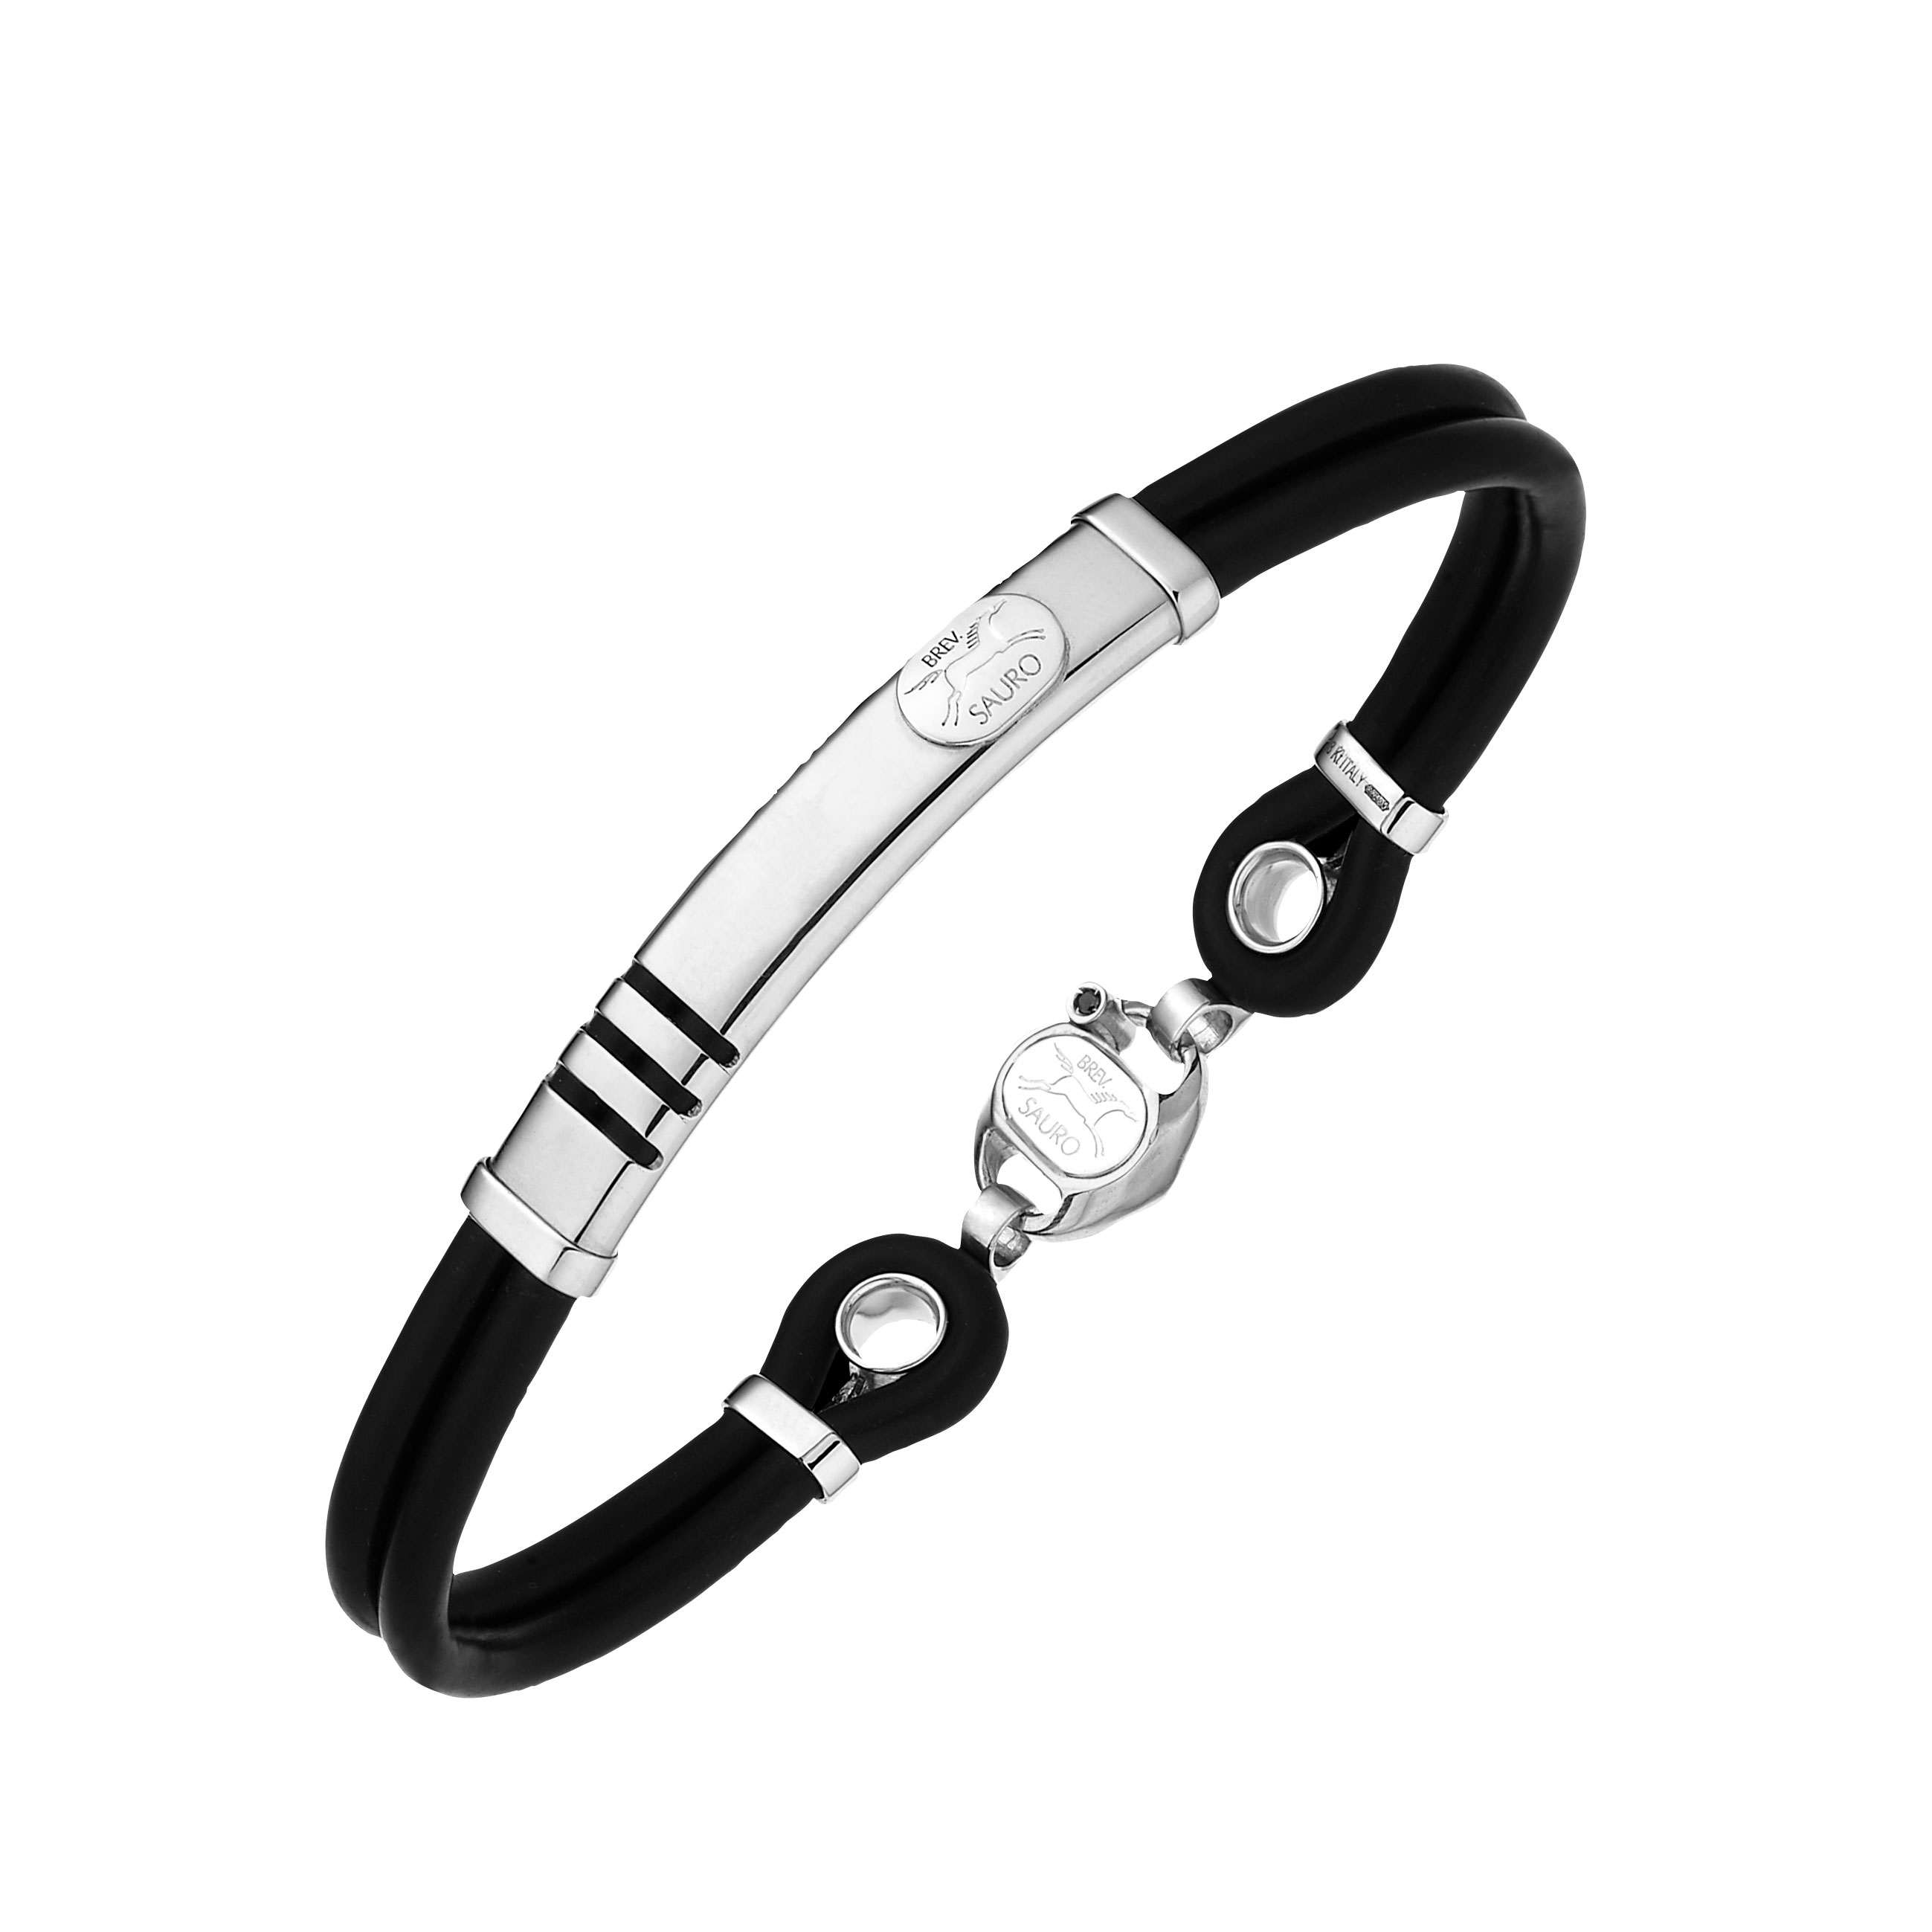 Breathtaking Black Rubber Bracelets for Ultimate Elegance - Alibaba.com